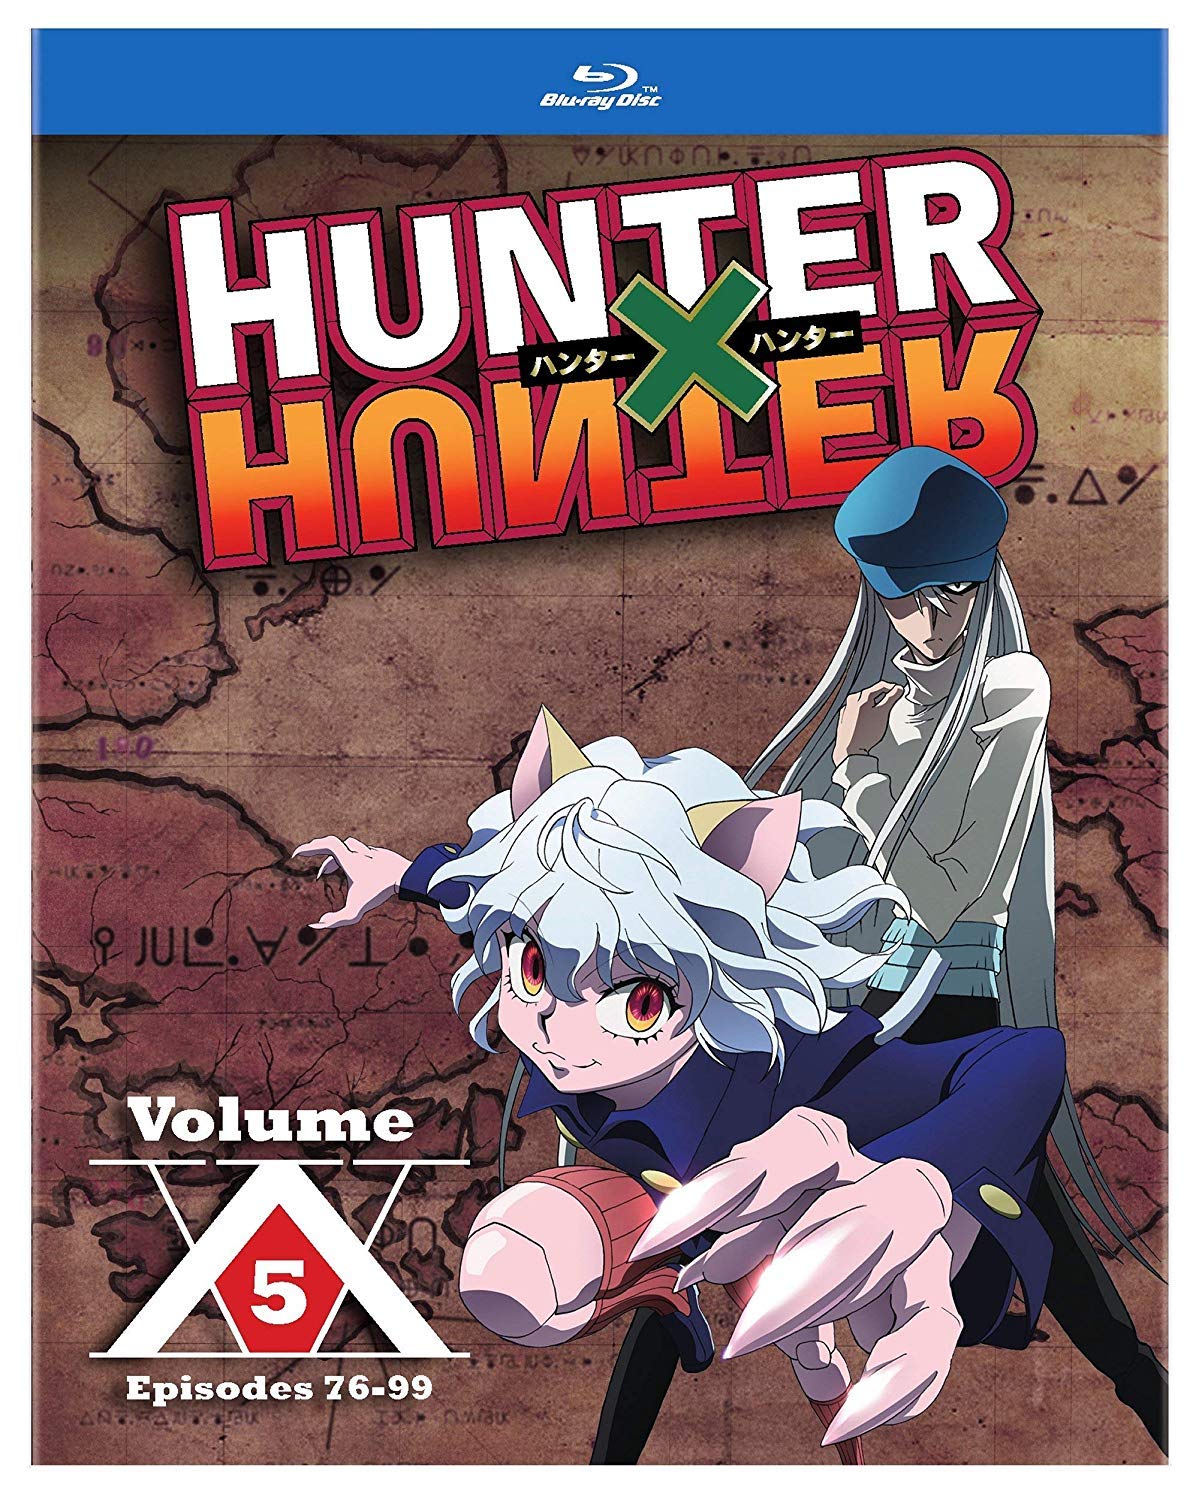 download hunter x hunter 2011 episode 111